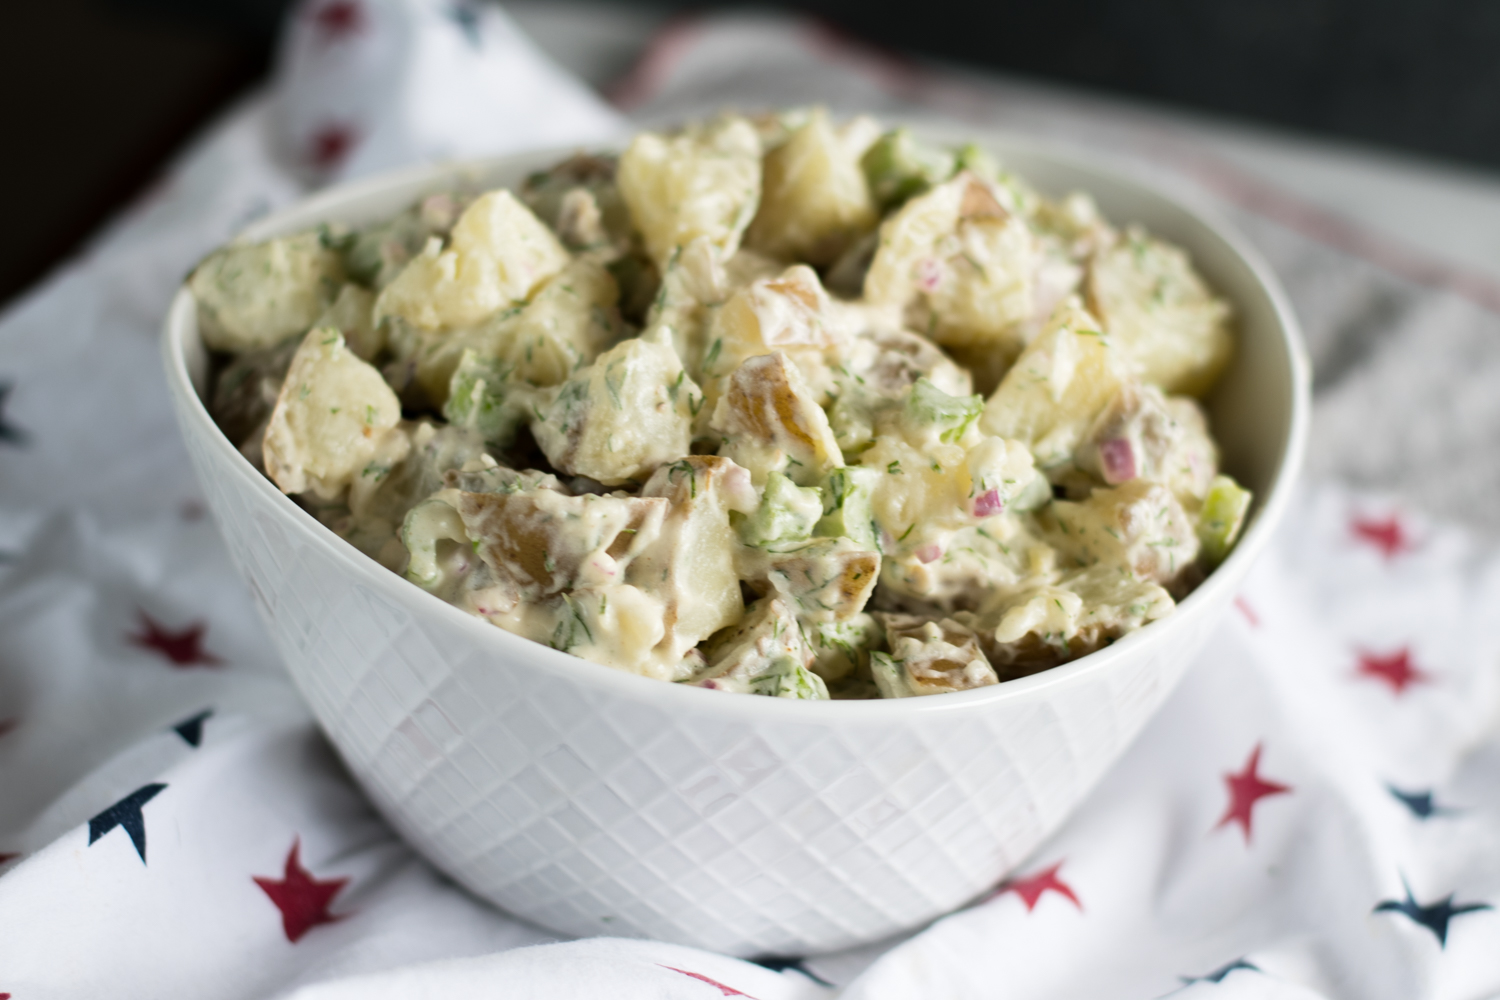 Vegan Dill Potato Salad is perfect for Summer BBQs and picnics! #vegan #summer #BBQ #sides #potato #salad #potluck #picnic #recipes